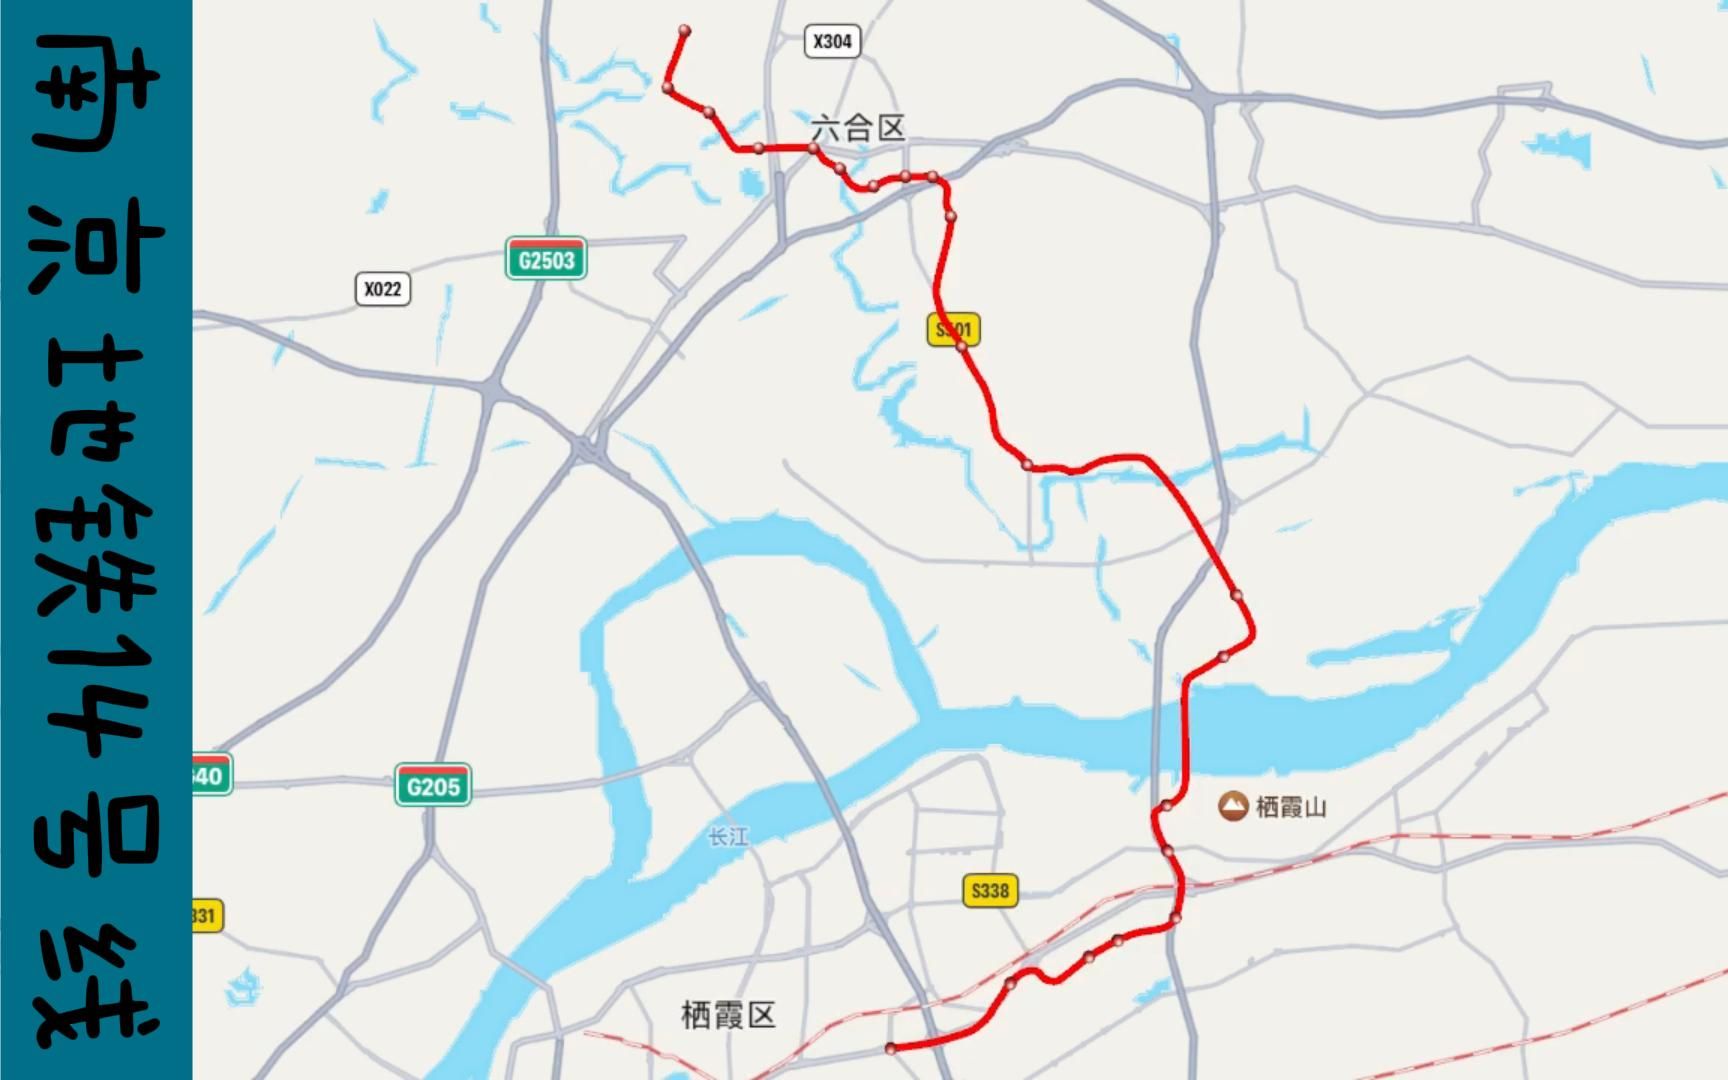 南京14号线地铁线路图图片